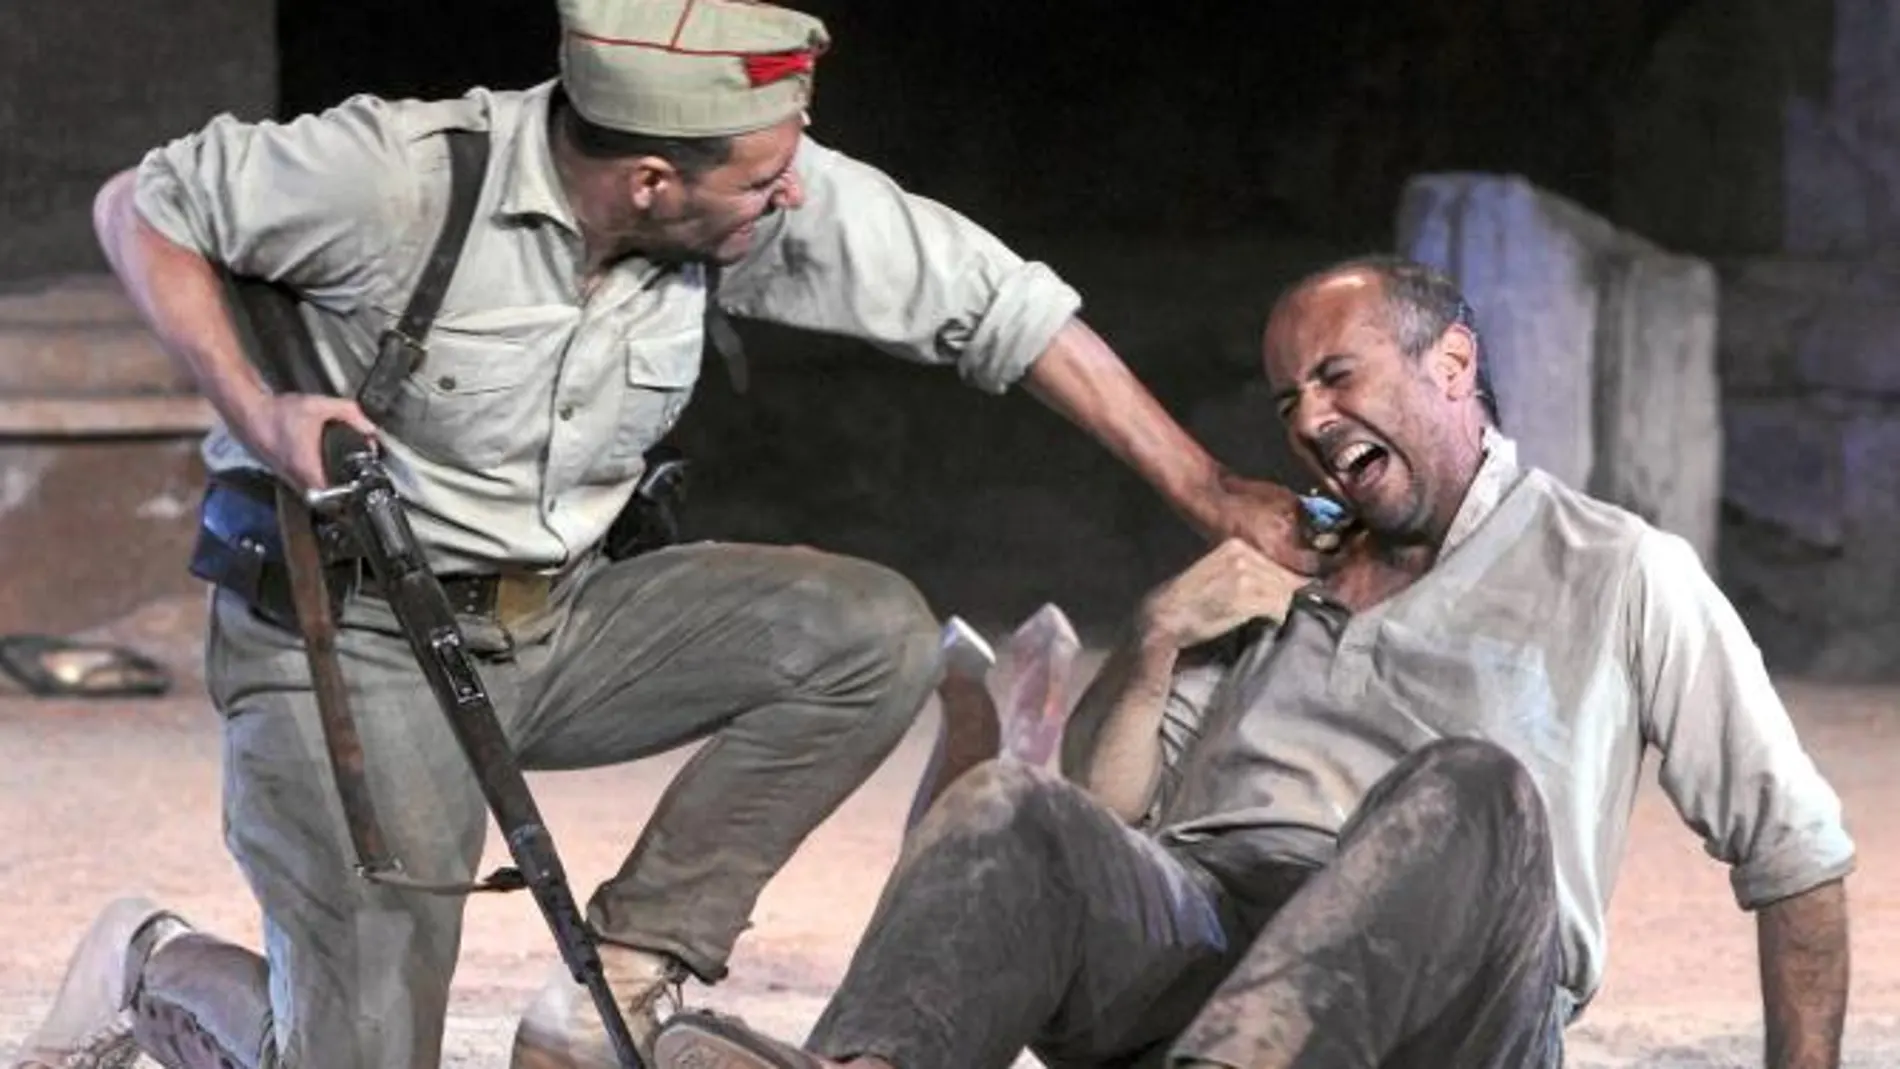 Un soldado nacional maltrata al personaje del miliciano Matías, interpretado por Esteban G. Ballesteros